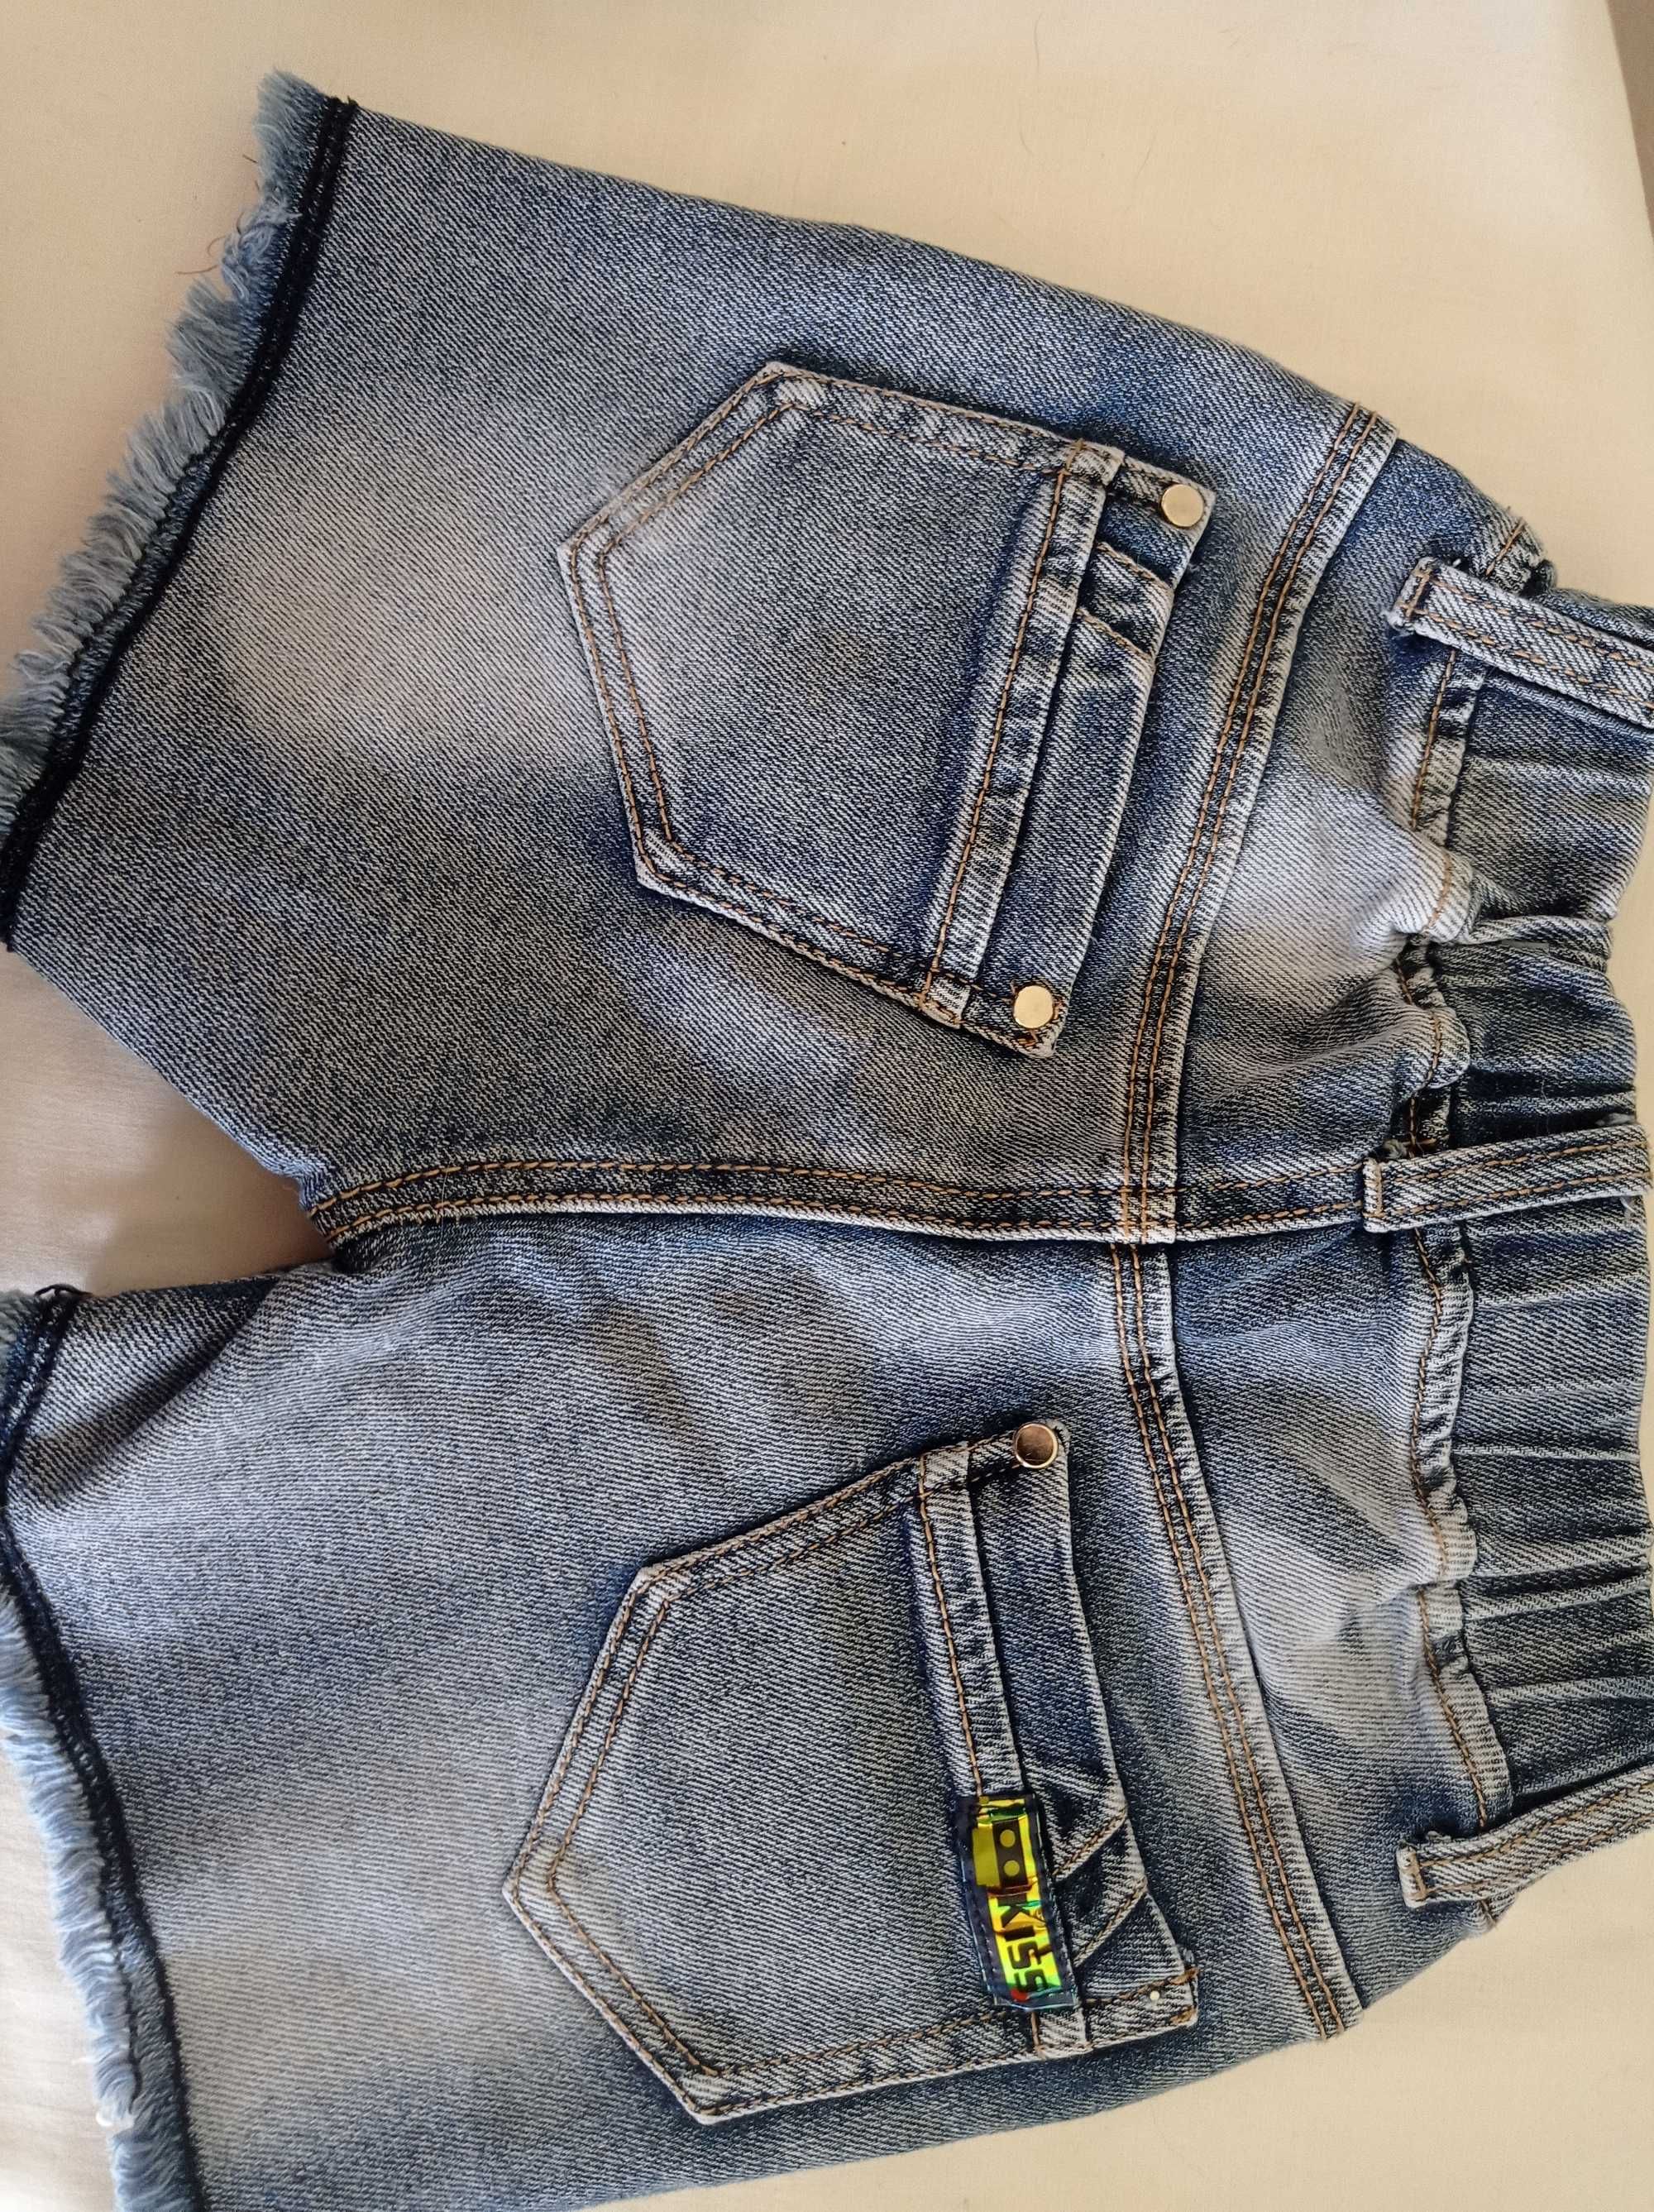 Продам шорты джинсовые для девочки 7-8 лет новые